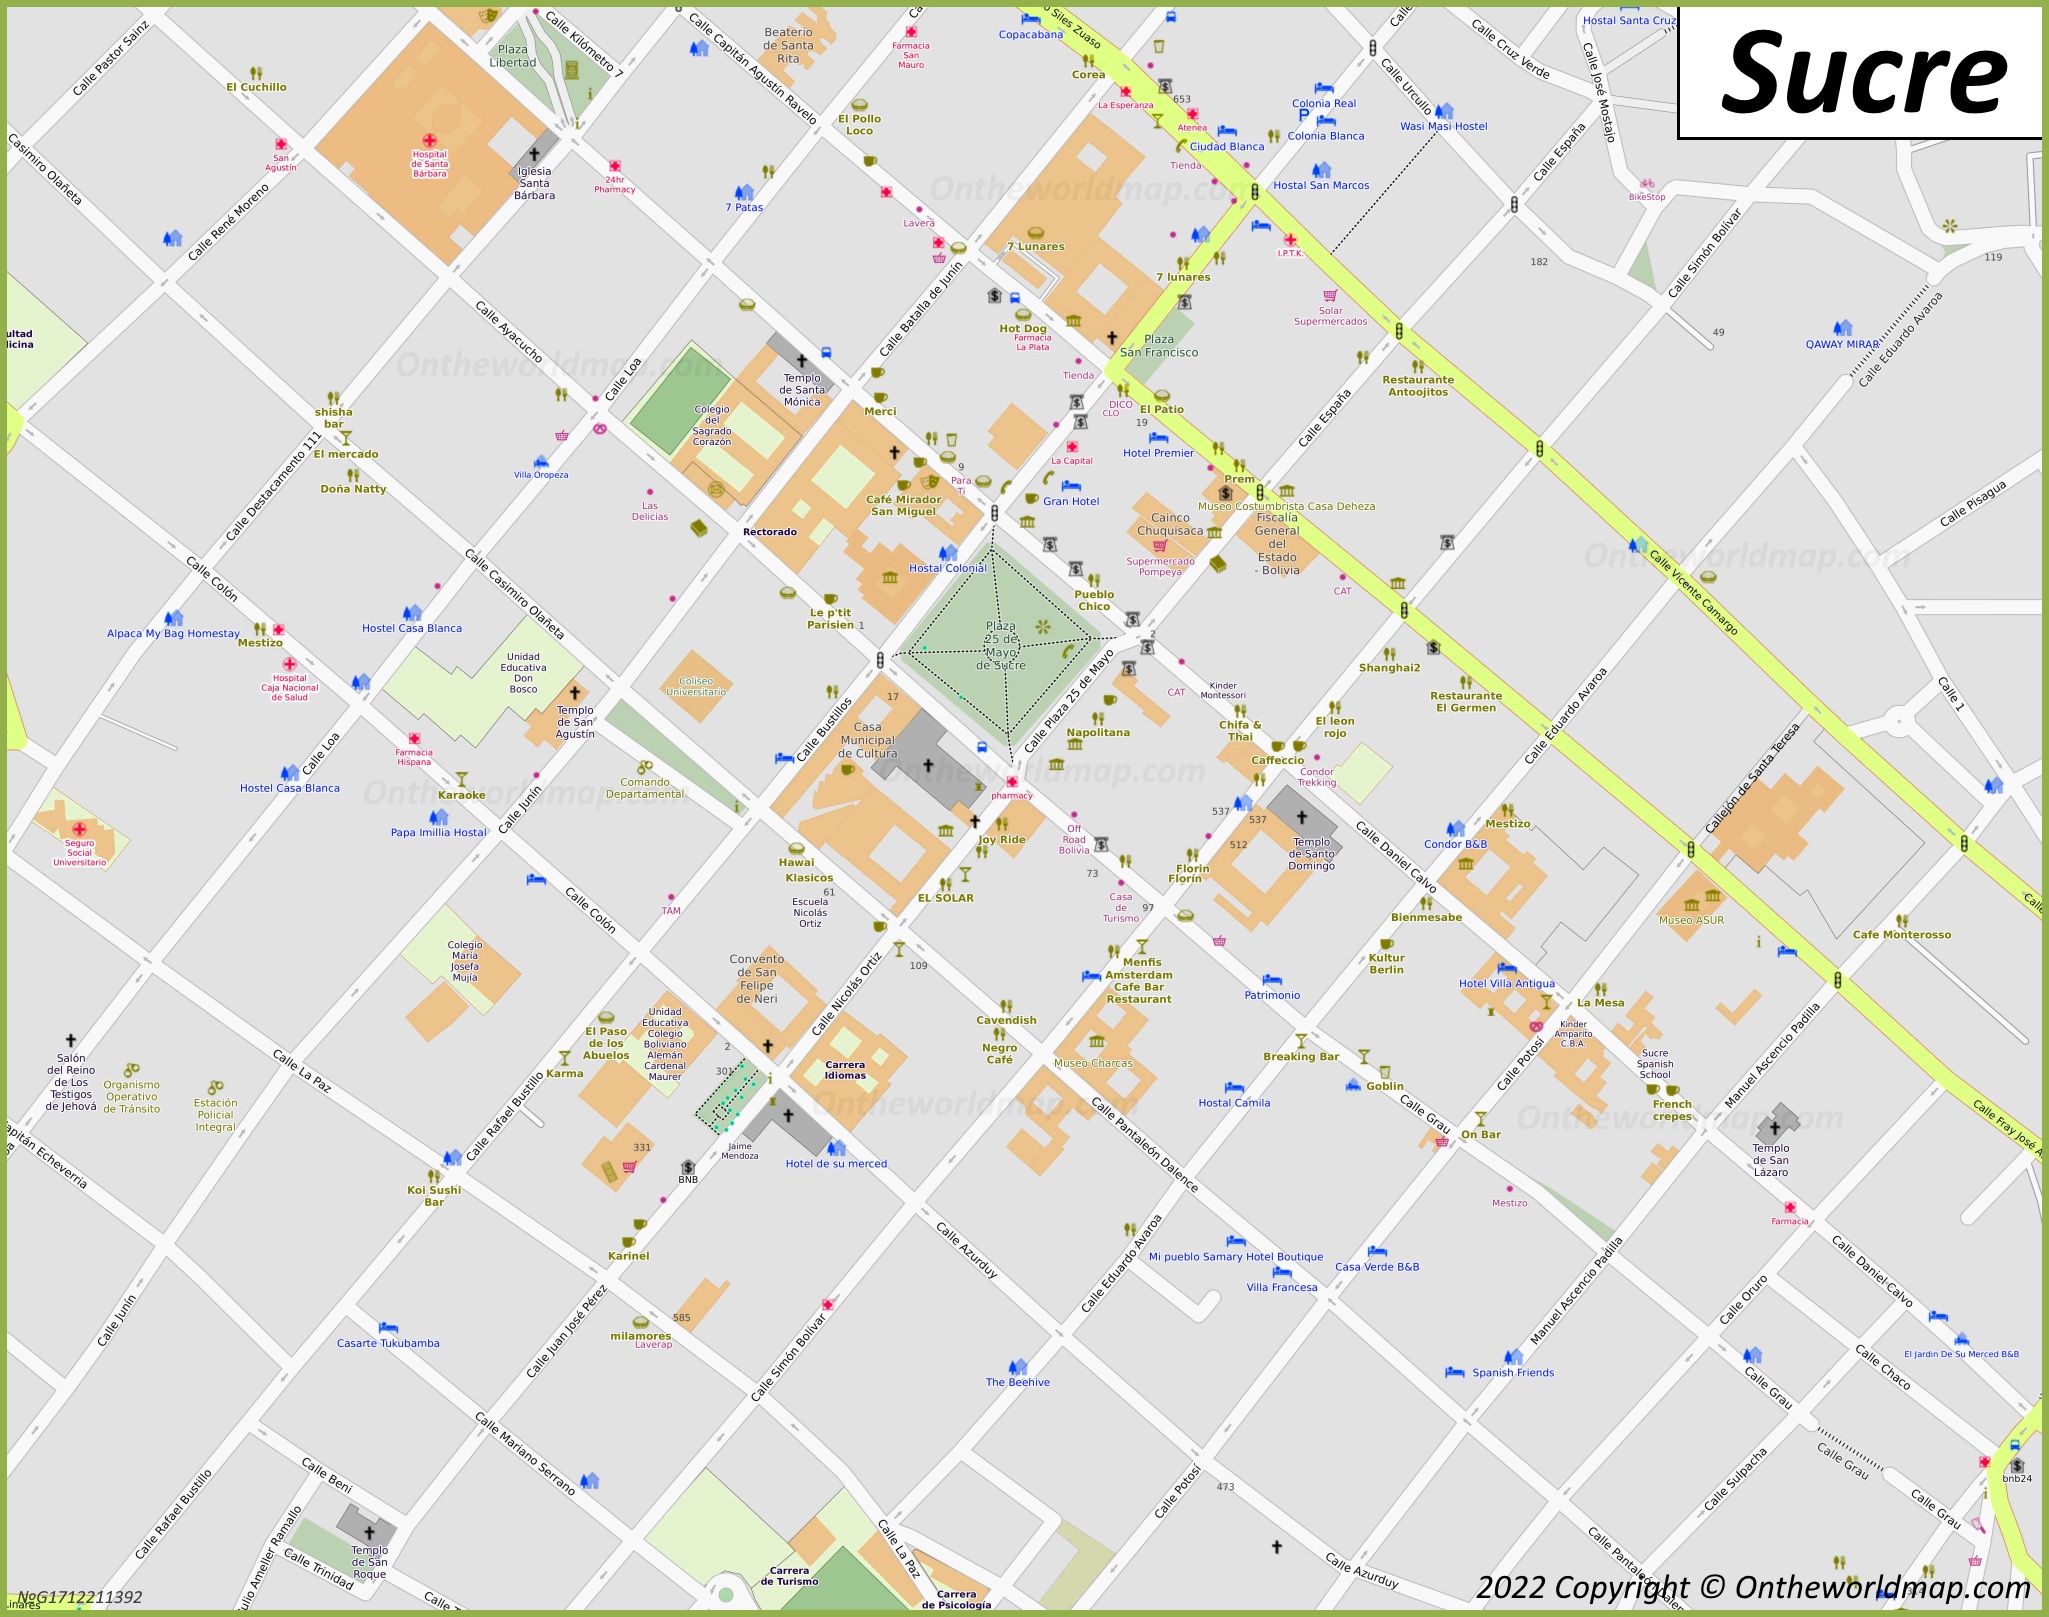 Sucre - Mapa del centro